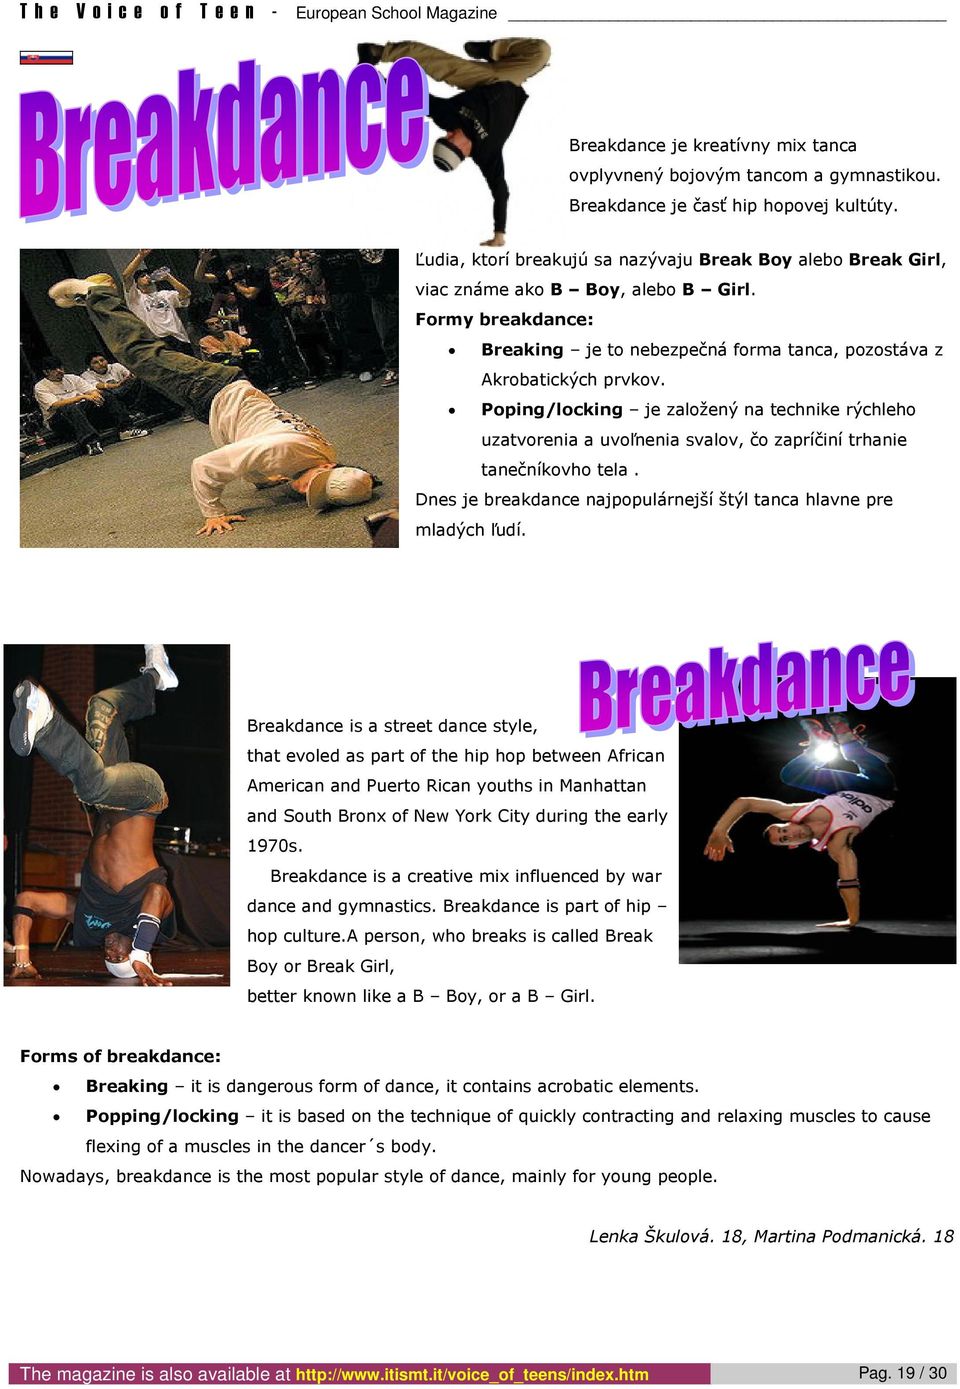 Poping/locking je založený na technike rýchleho uzatvorenia a uvoľnenia svalov, čo zapríčiní trhanie tanečníkovho tela. Dnes je breakdance najpopulárnejší štýl tanca hlavne pre mladých ľudí.